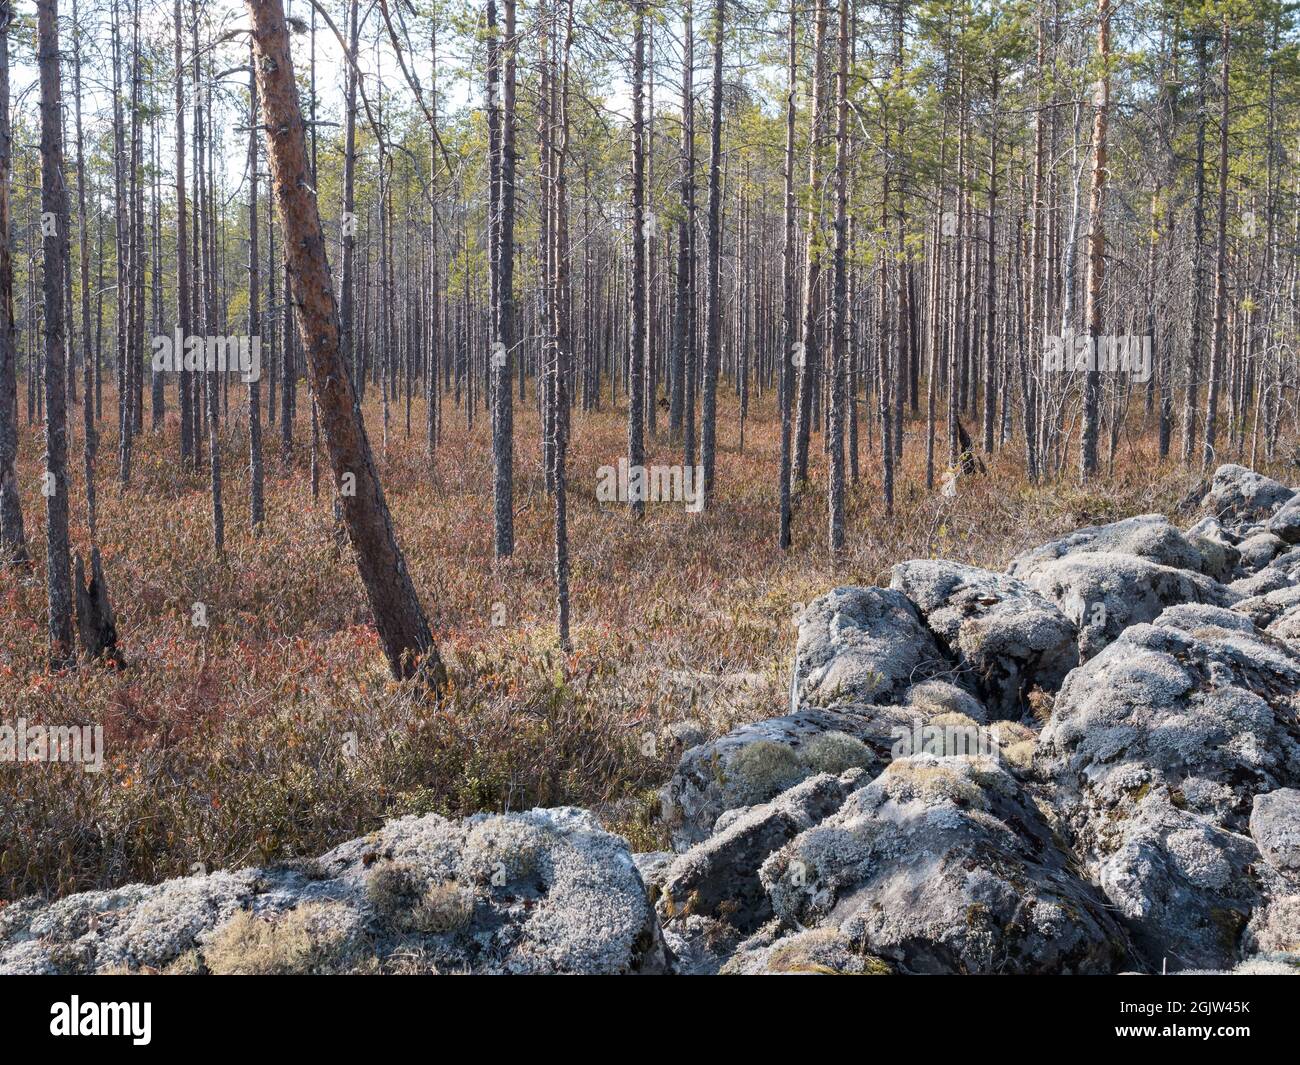 Dwarf-shrub pine bog by field of rocks Stock Photo